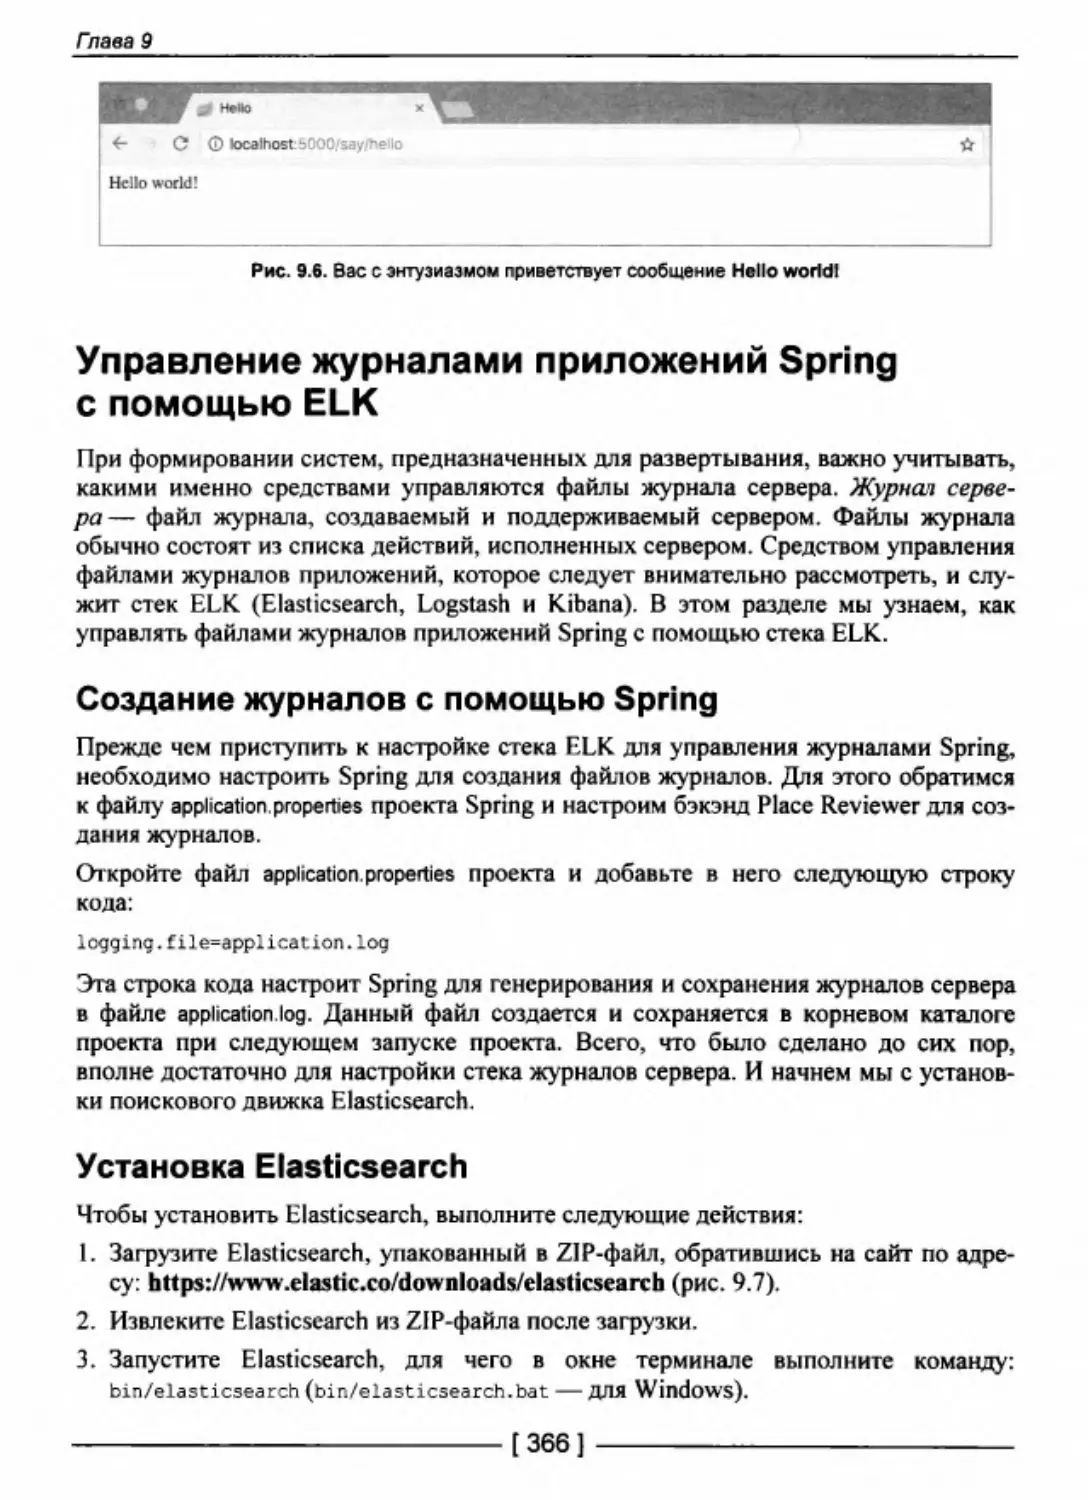 Управление журналами приложений Spring с помощью ELK
Установка Elasticsearch